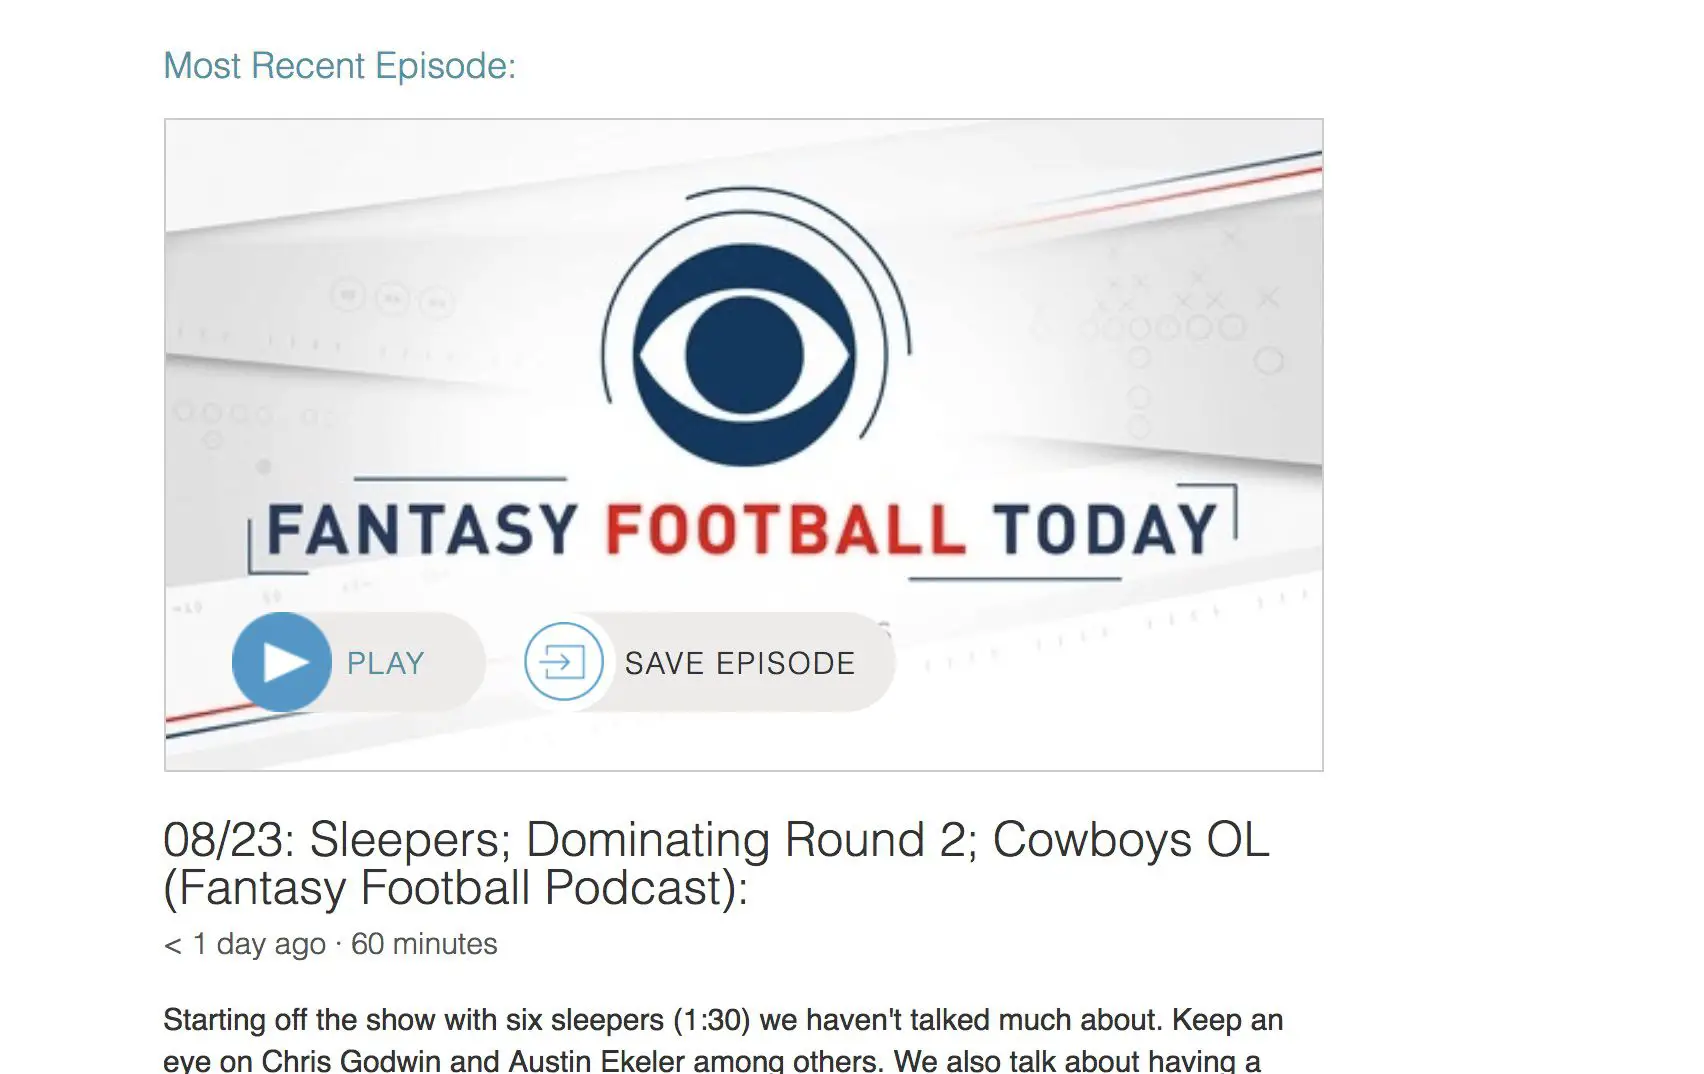 Captura de tela da página do podcast do Fantasy Football Today no Stitcher.